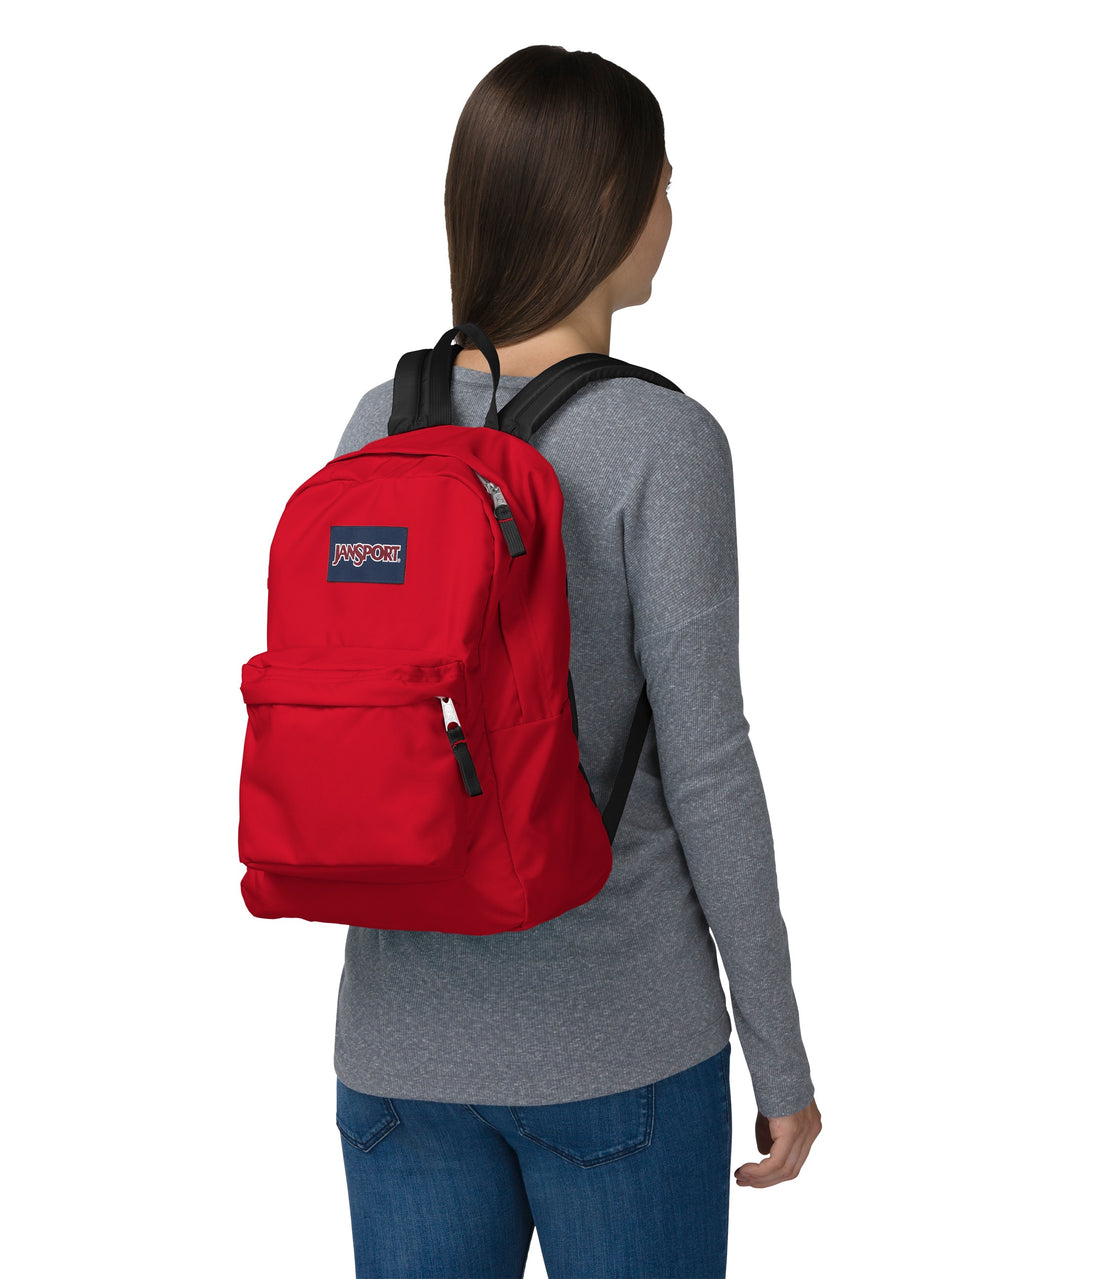 Superbreak One Backpack-Backpack-Jansport-Red Tape-SchoolBagsAndStuff